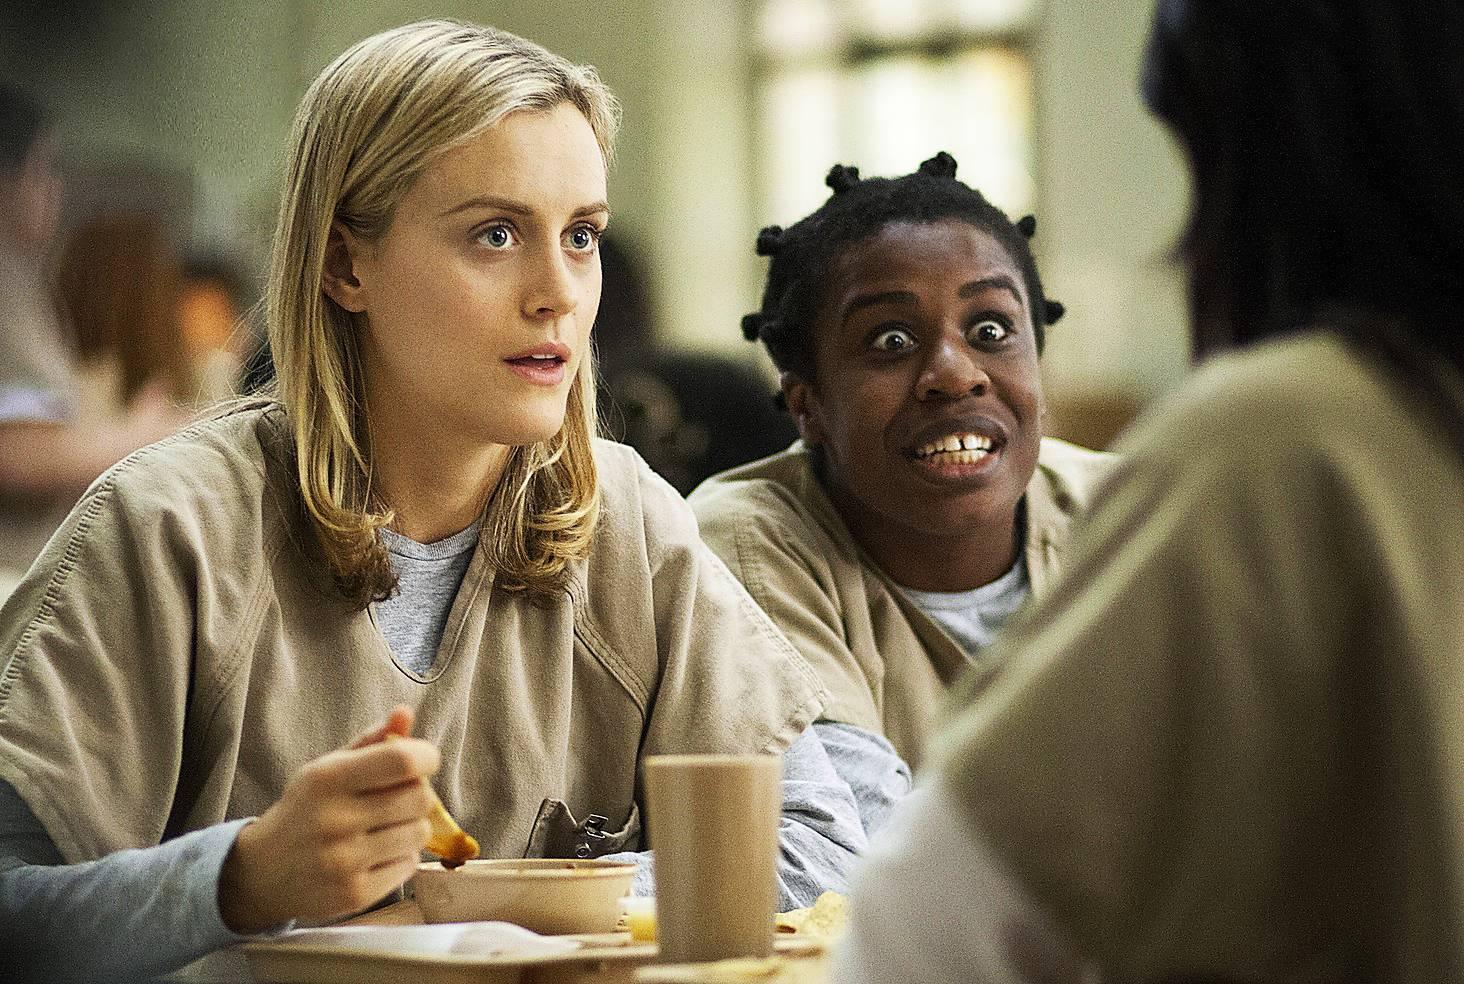 FIKTION... Taylor Schilling som Piper Kerman med Uzo Aduba på kvinnofängelset i tv-versionen av ”Orange is the new black”.